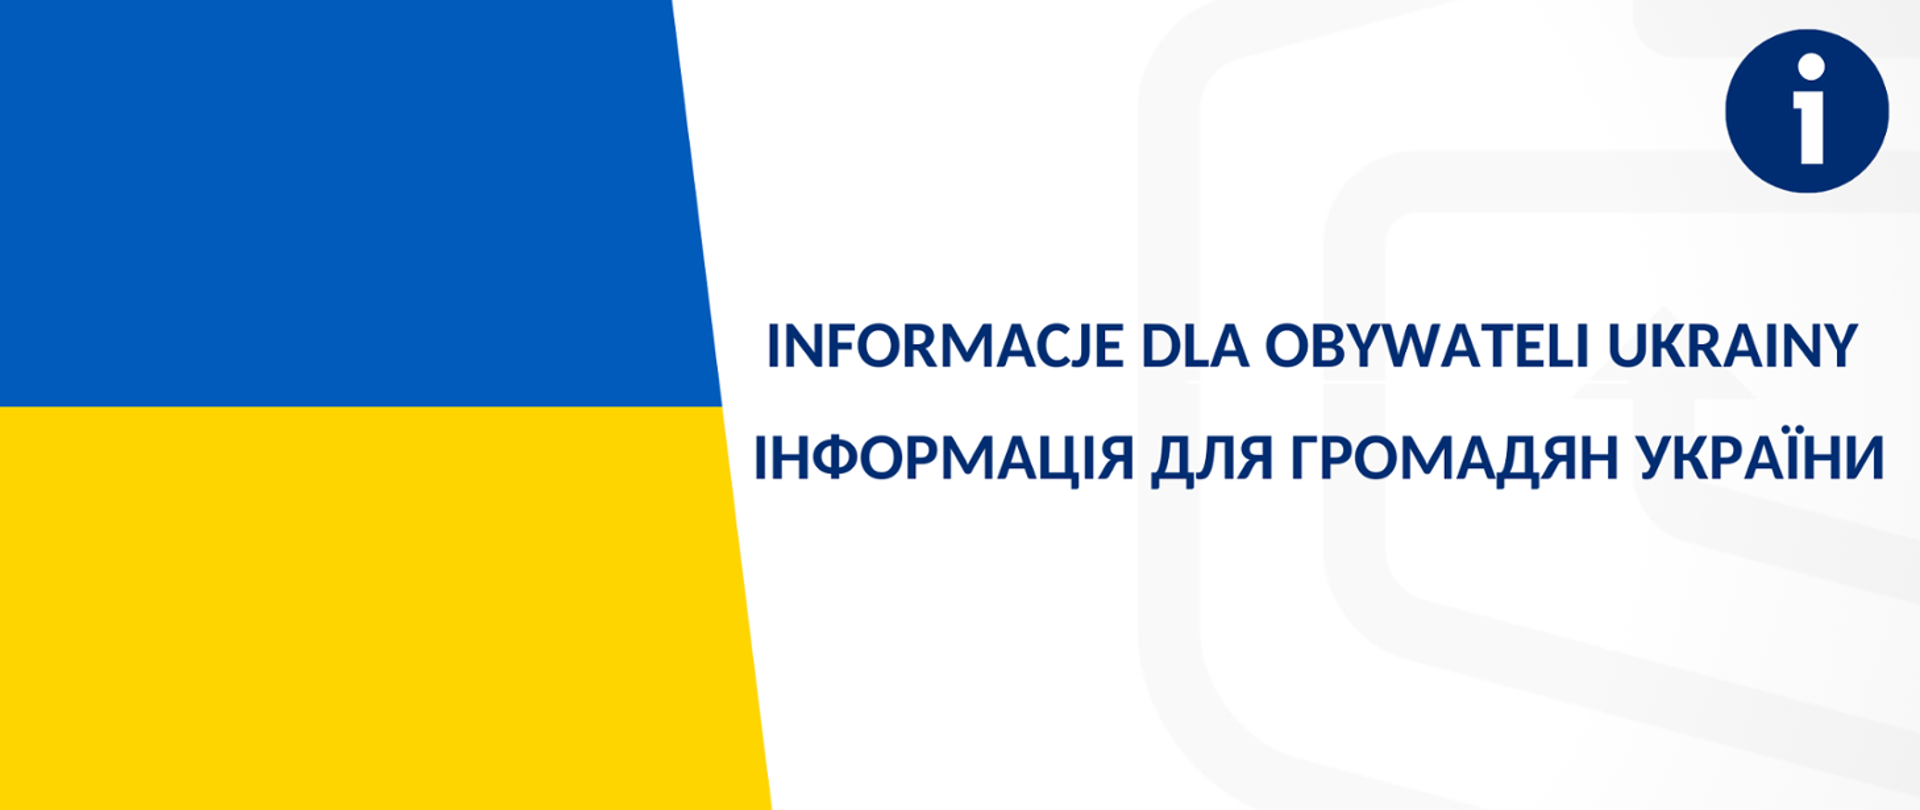 grafika przedstawiająca z lewej strony fragment flagi Ukrainy (2 poziome pasy, u góry niebieski, u dołu żółty), po prawej napis Informacje dla obywateli Ukrainy (w języku polskim i ukraińskim), nad napisem w prawym górnym narożniku biała litera i umieszczona na granatowym tle w kształcie koła